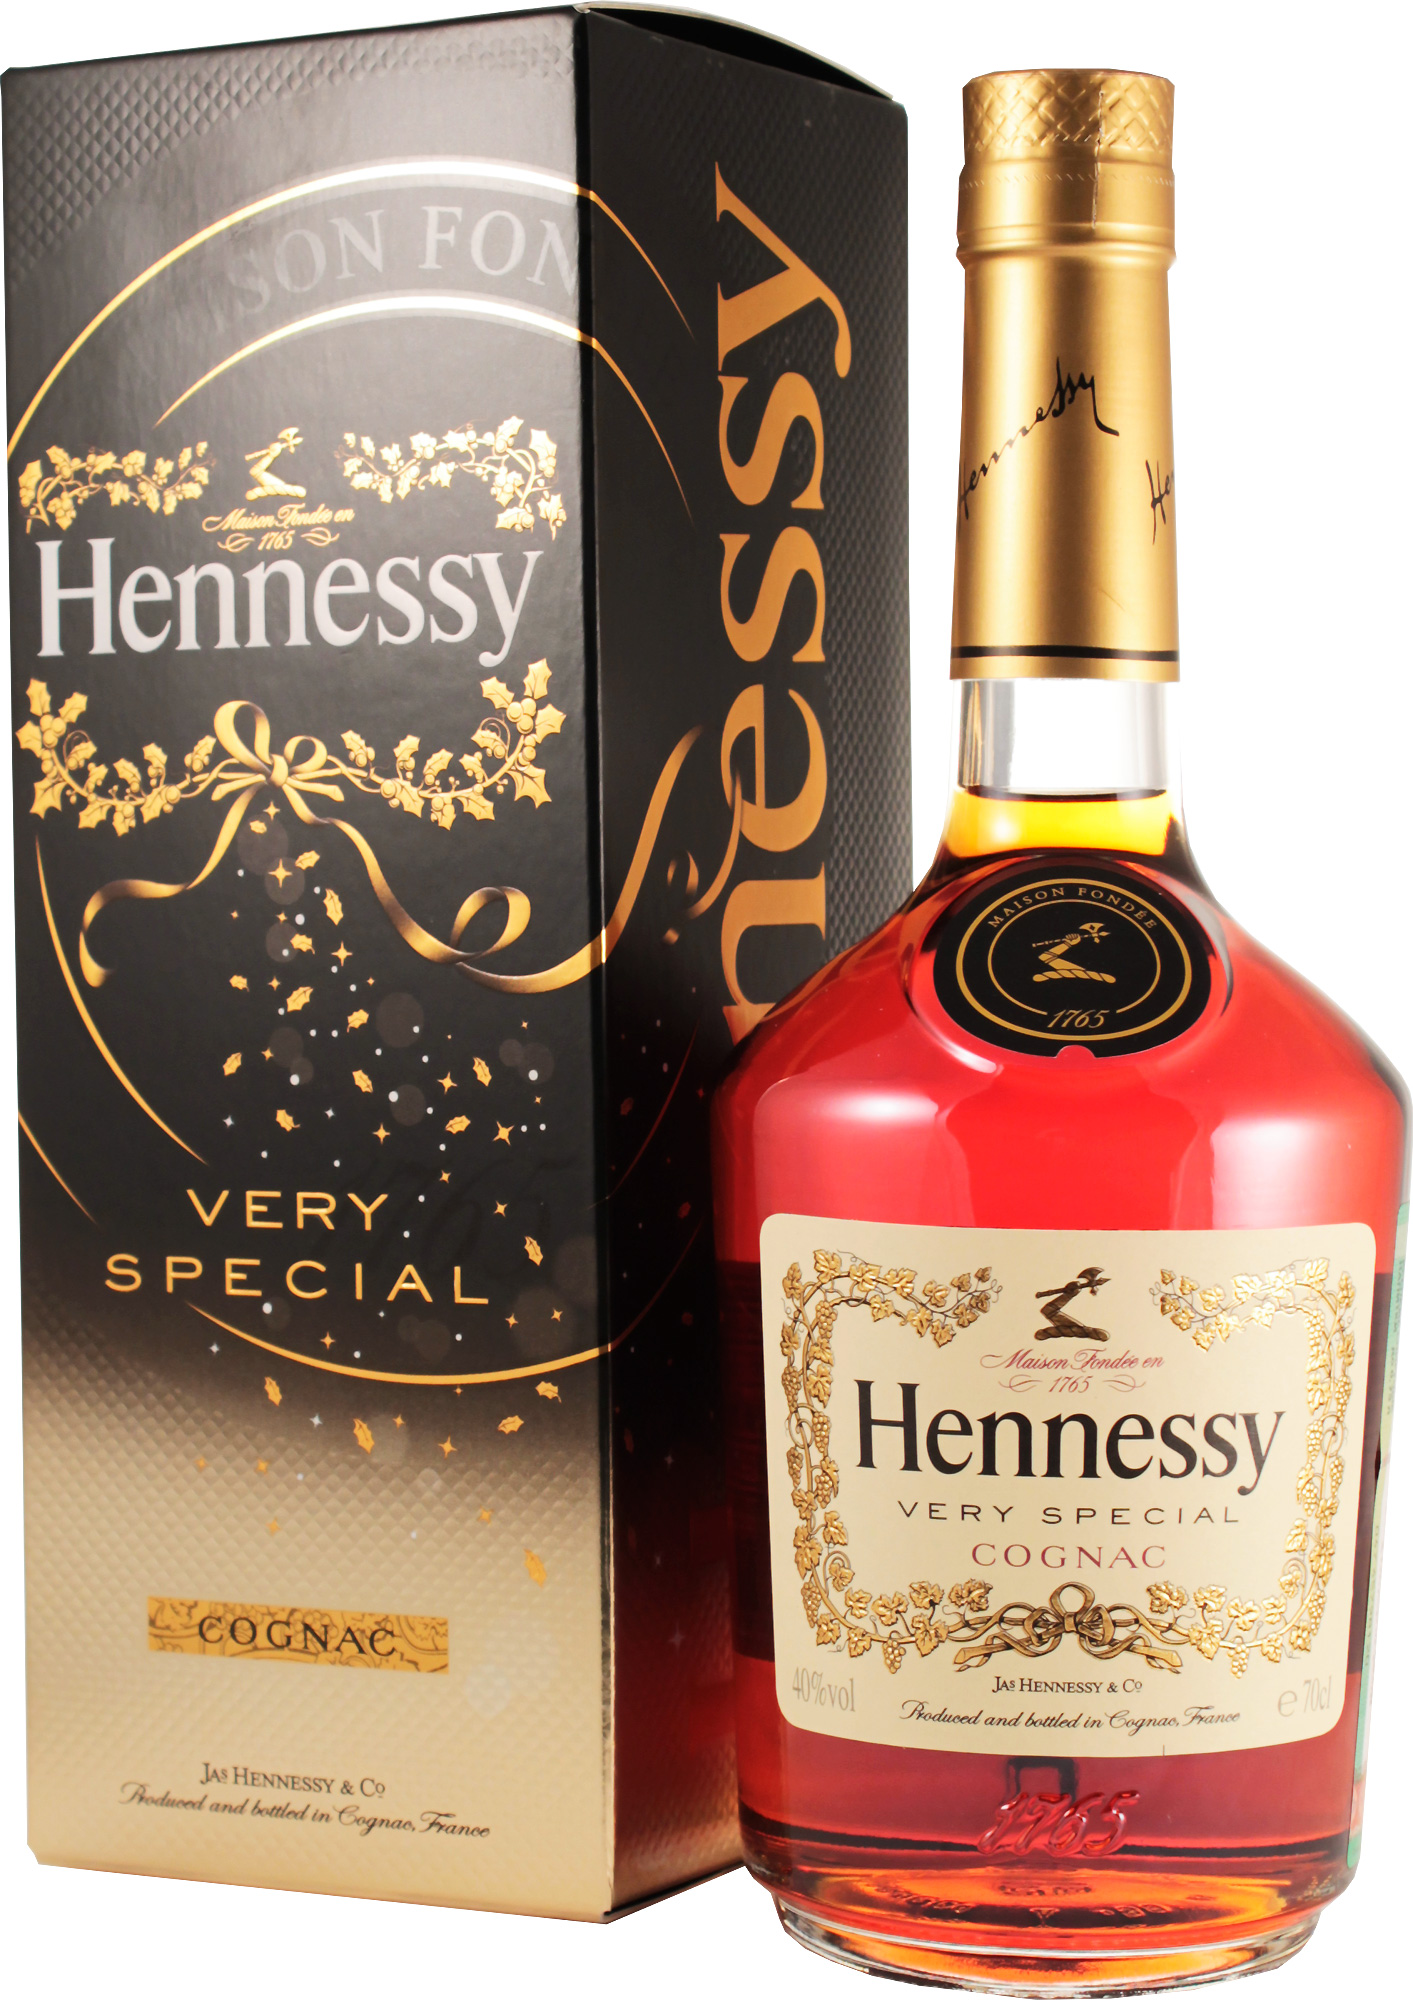 Коньяк хеннесси купить в москве. Французский коньяк Хеннесси. Hennessy vs Cognac подарочные. Hennessy vs 0.7. Коньяк "Hennessy vs" ( Хеннесси вс).